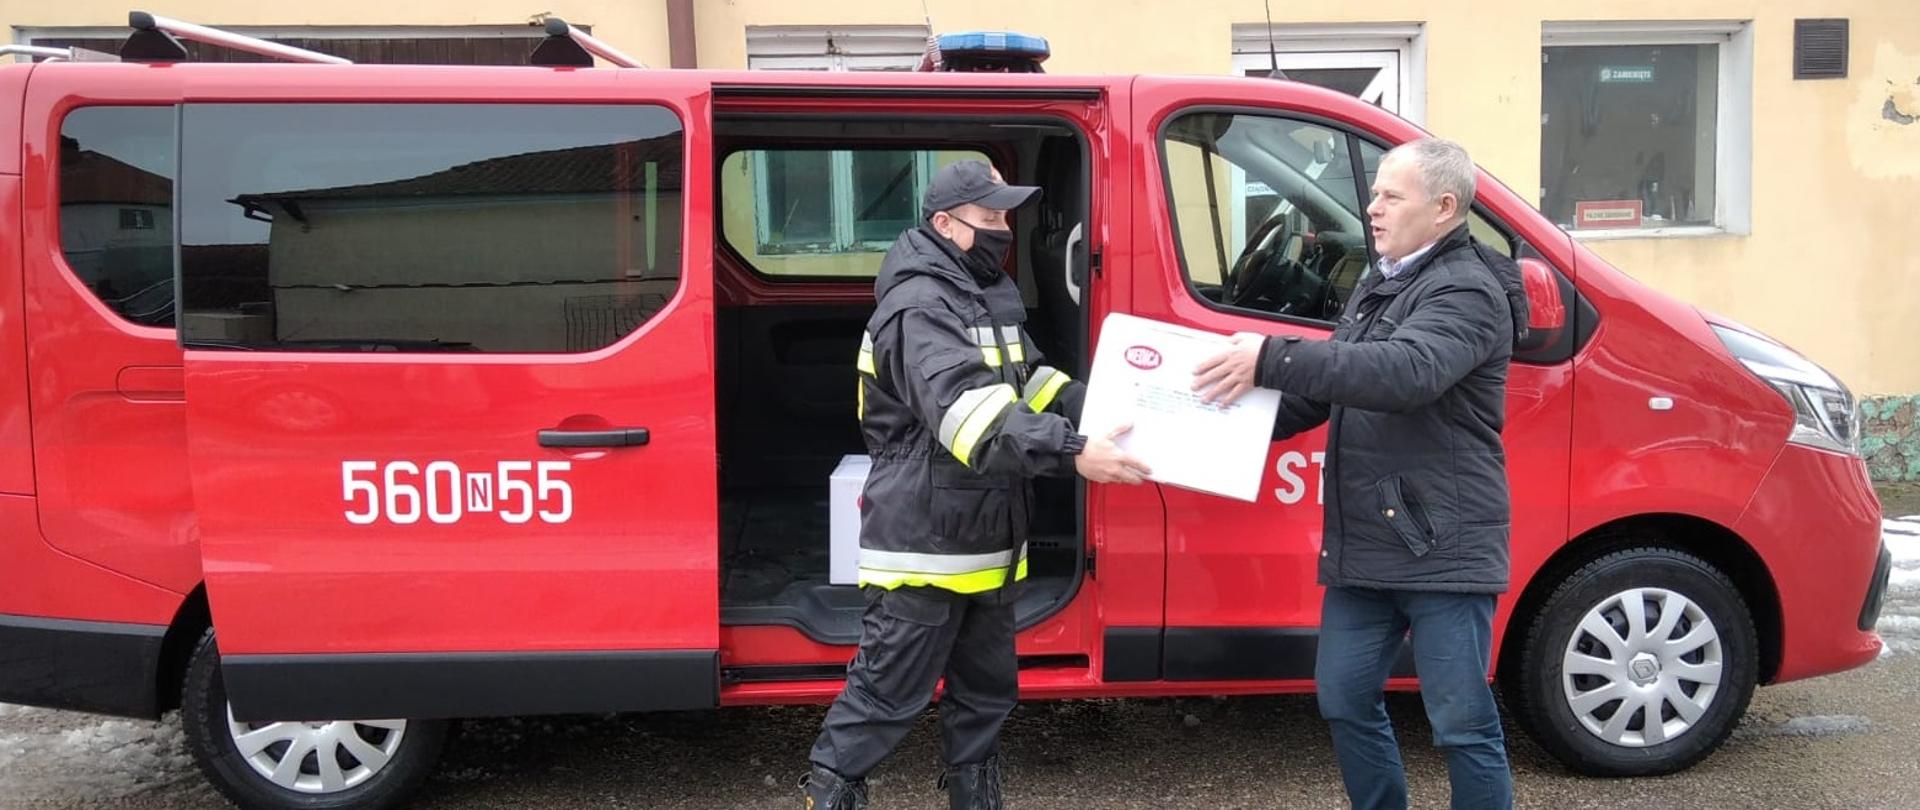 Strażak przekazuje karton dla urzędnika w którym znajdują się maseczki medyczne. Za nimi znajduje się czerwony samochód PSP bus z otwartymi bocznymi drzwiami. 